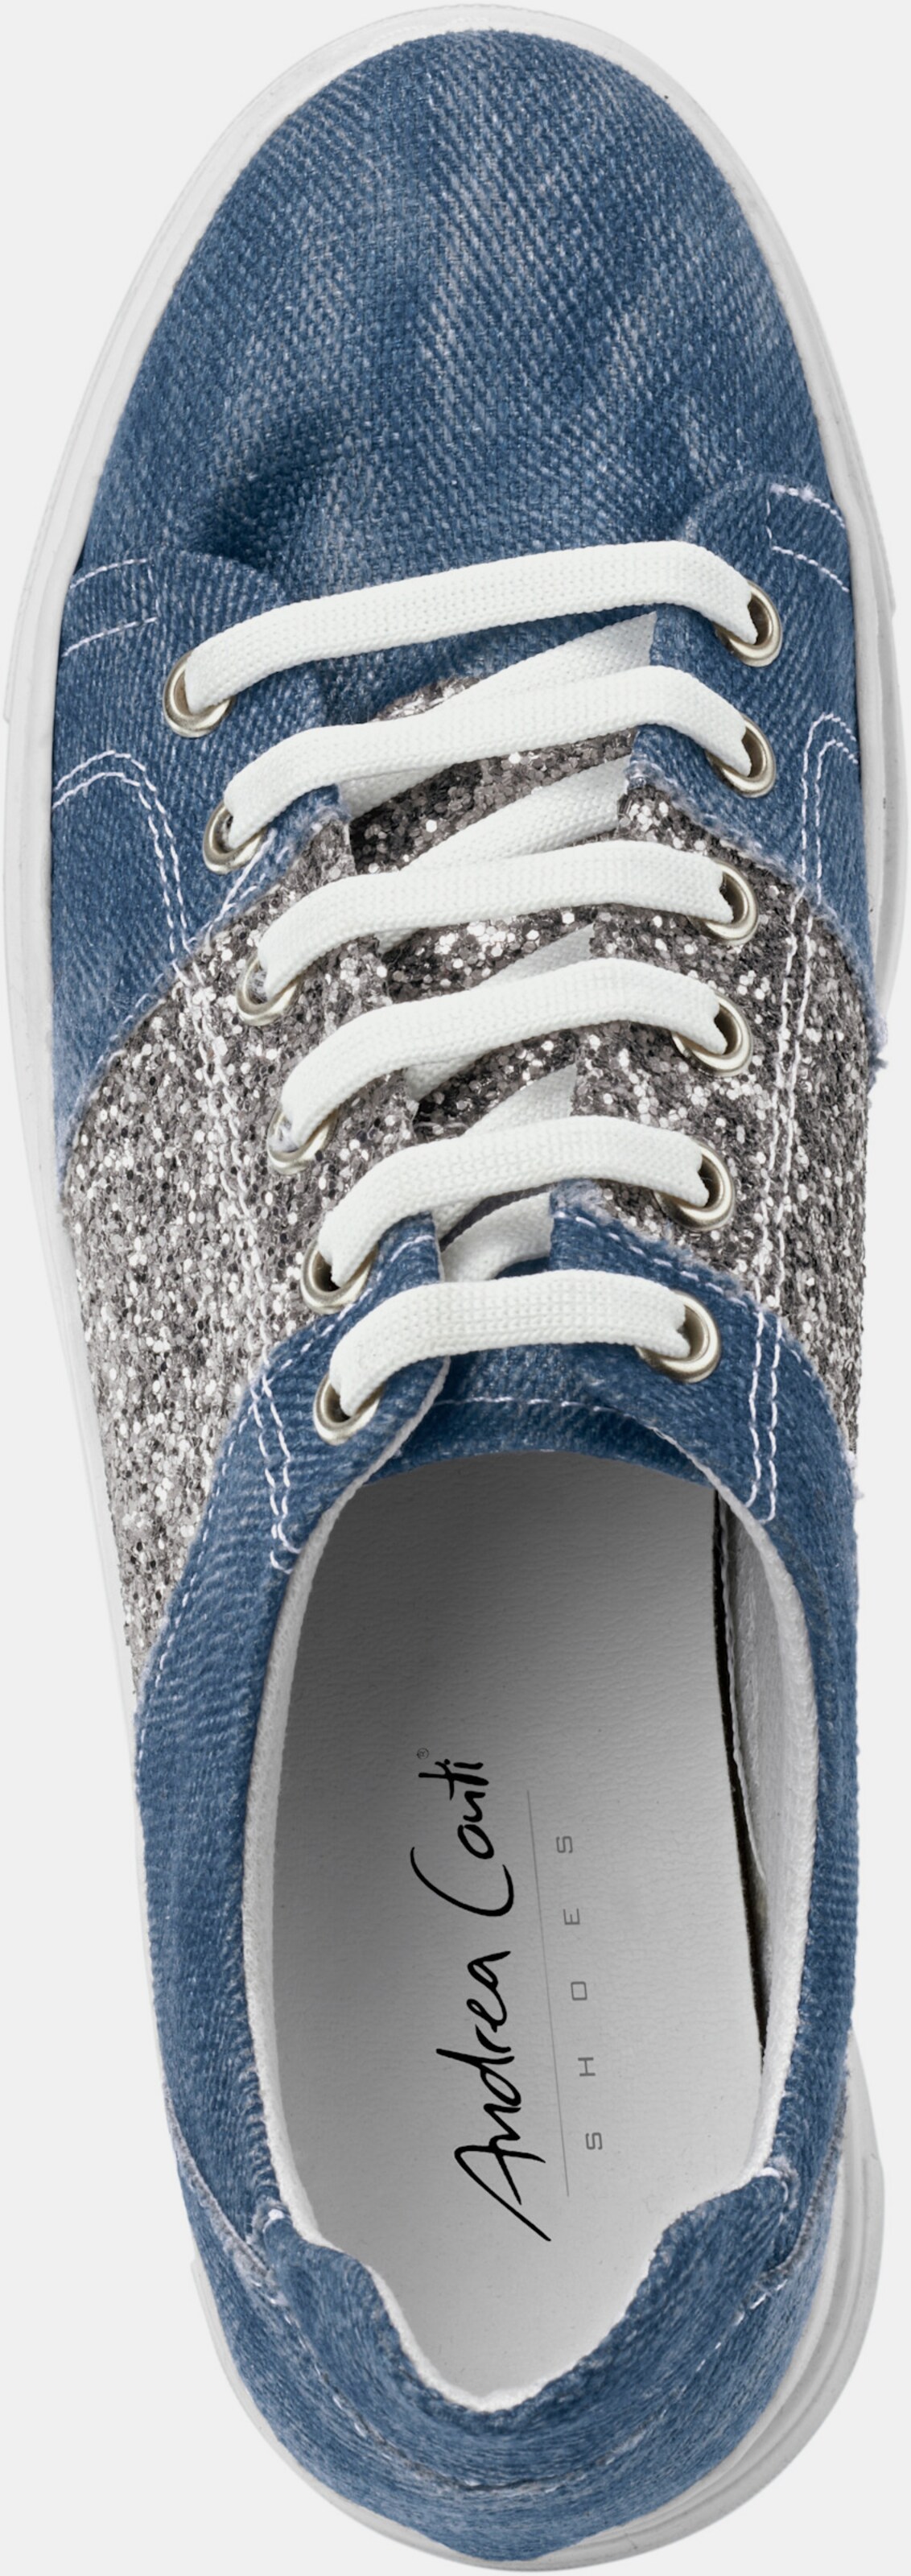 Andrea Conti Sneaker - jeansblau-silberfarben